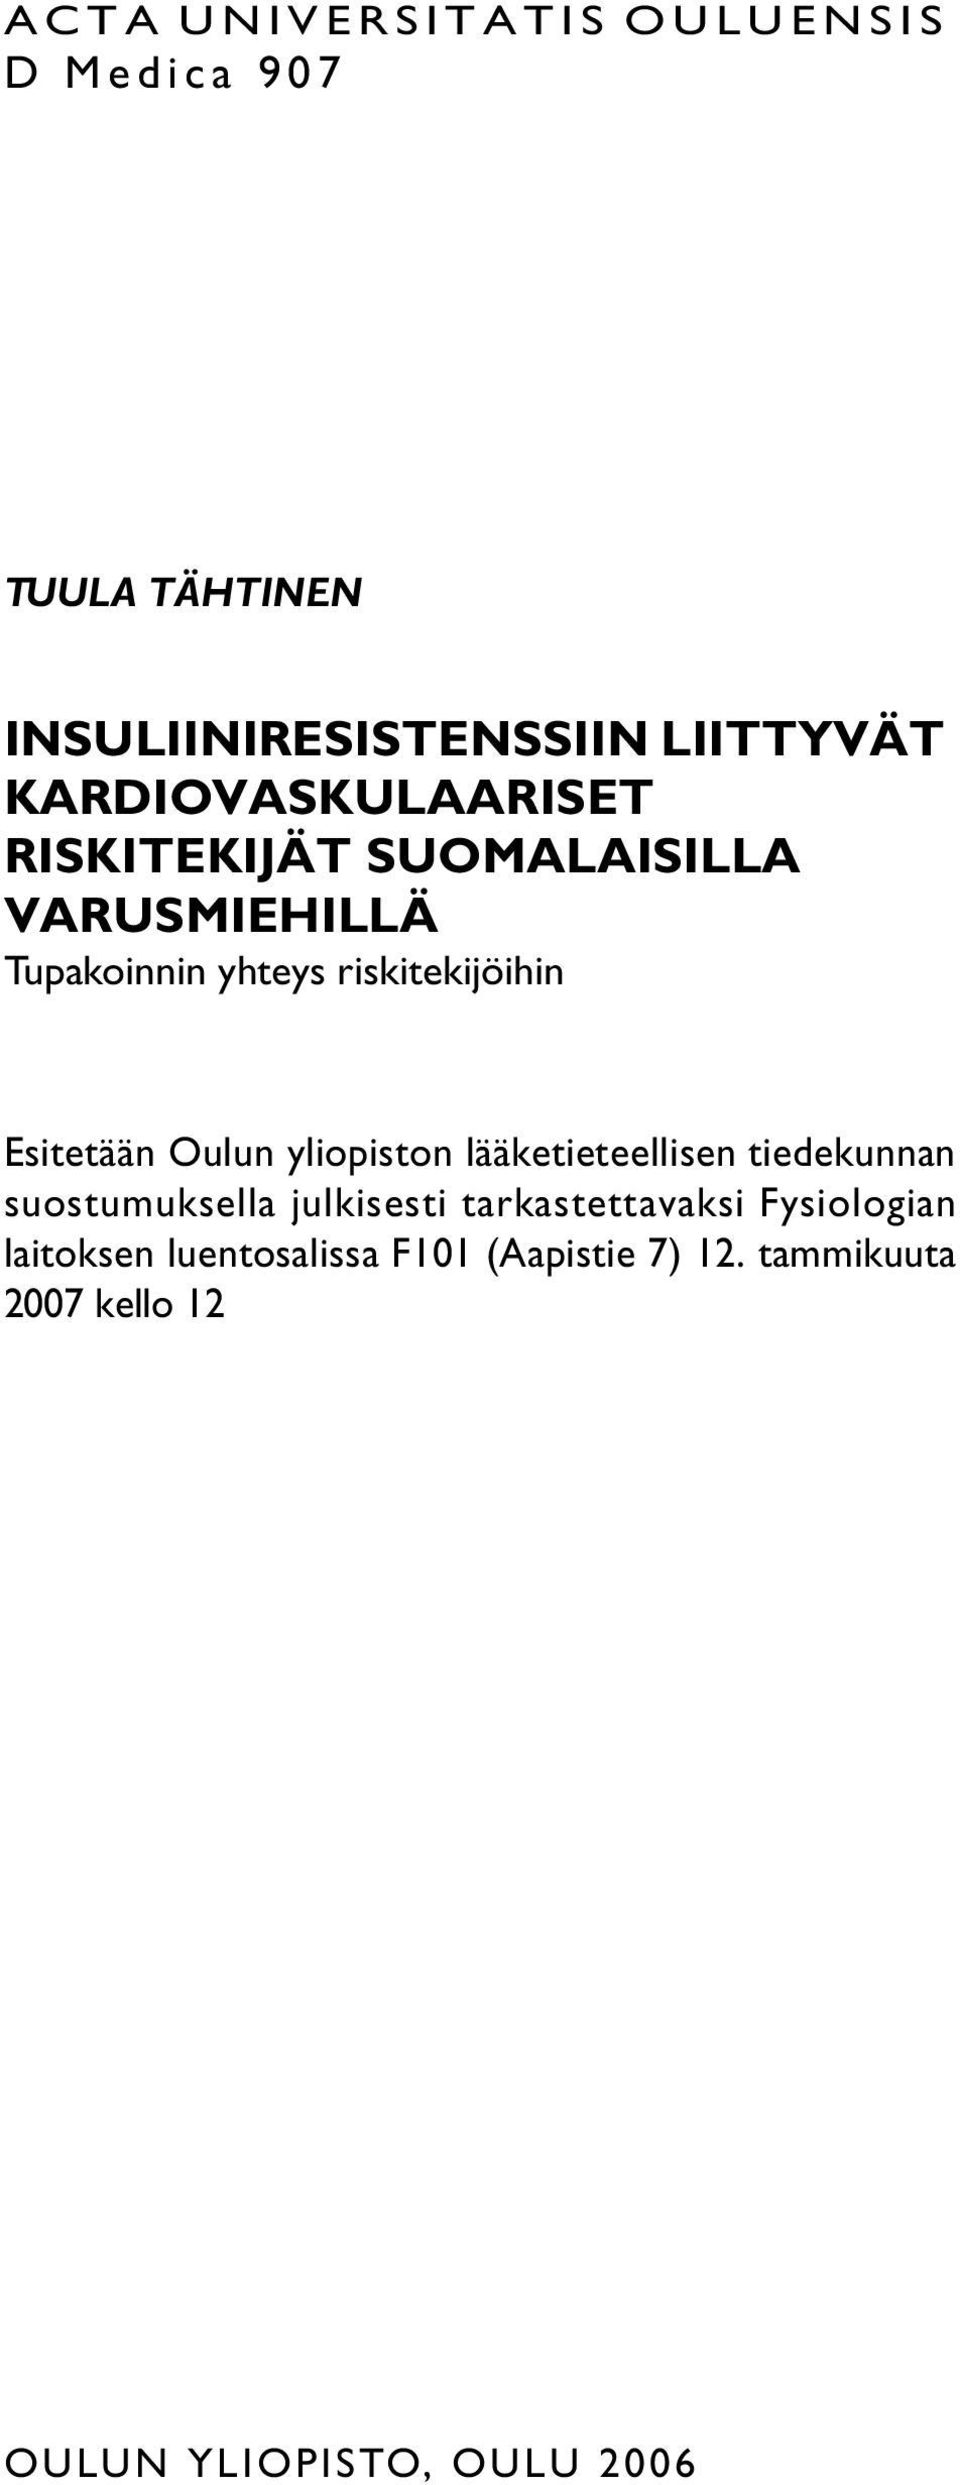 Esitetään Oulun yliopiston lääketieteellisen tiedekunnan suostumuksella julkisesti